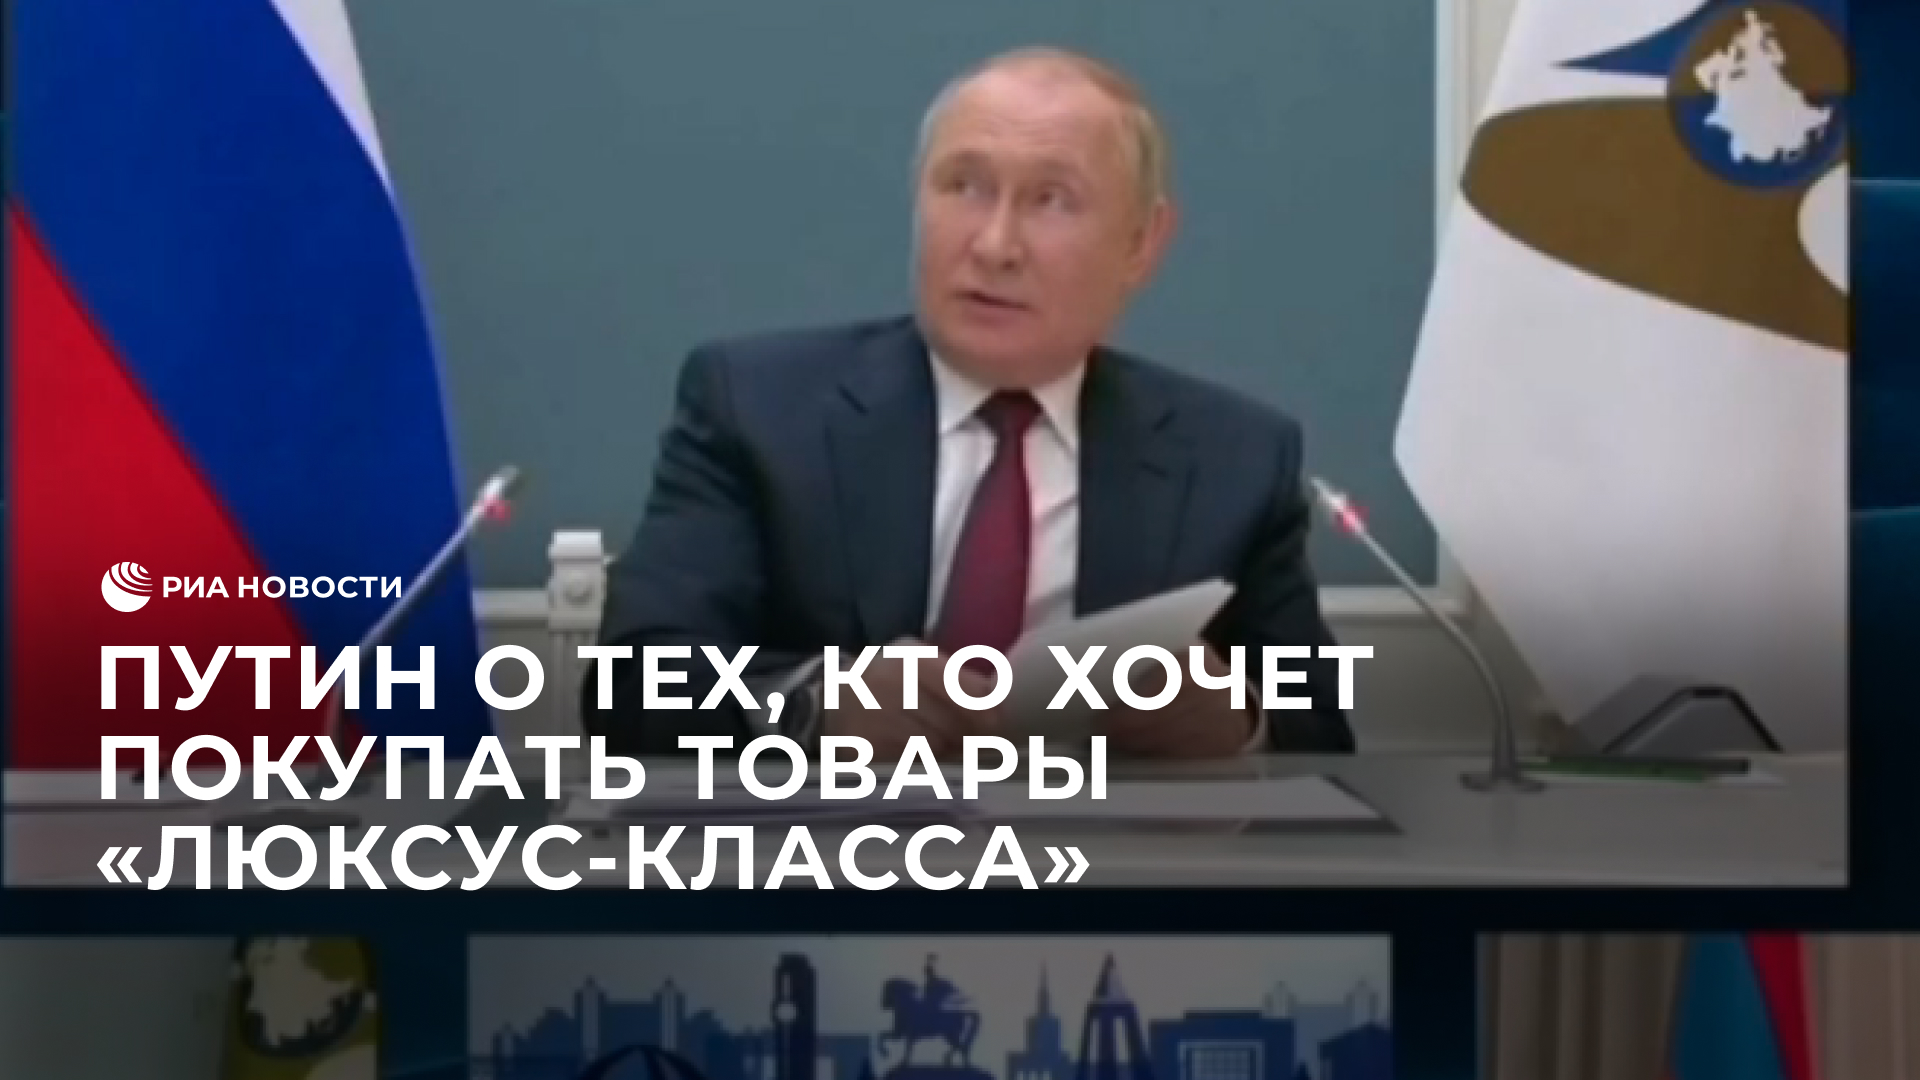 Путин о тех, кто хочет покупать товары "люксус-класса"